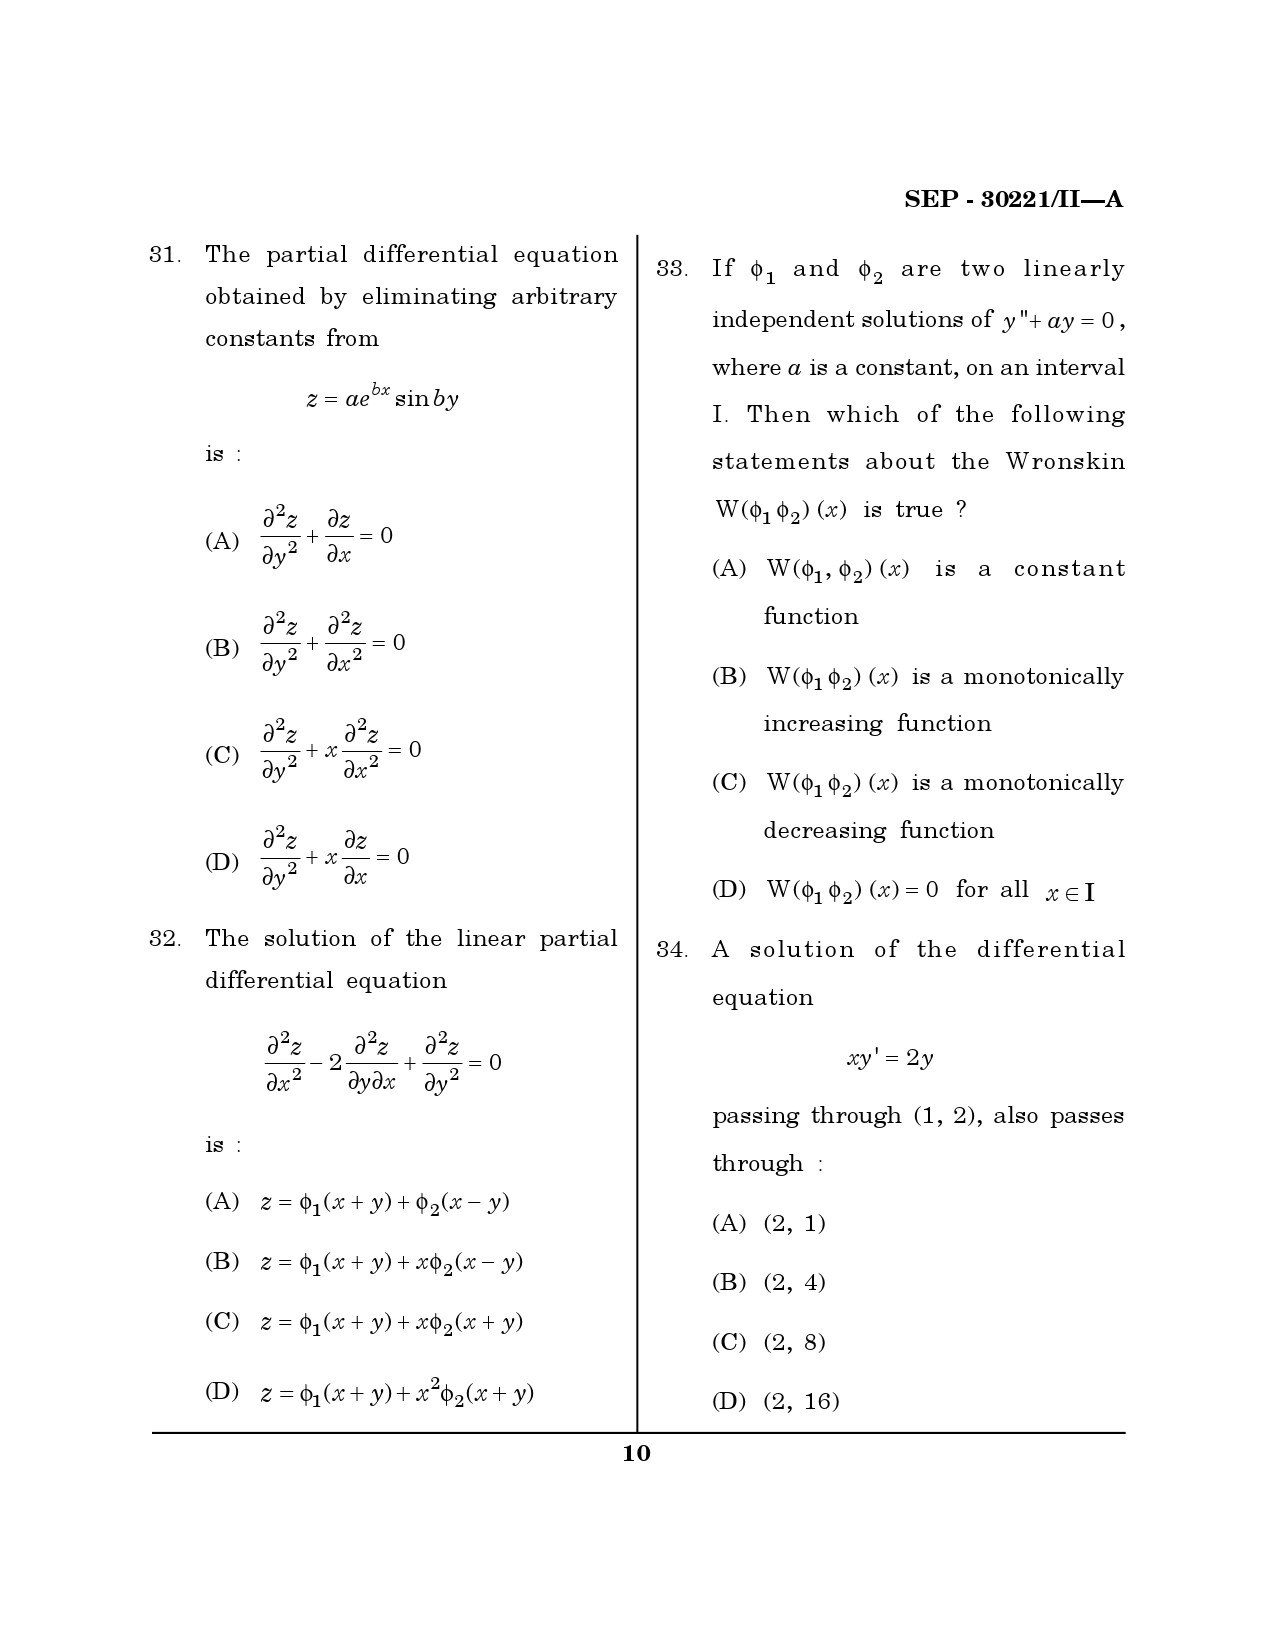 Maharashtra SET Mathematical Sciences Exam Question Paper September 2021 9